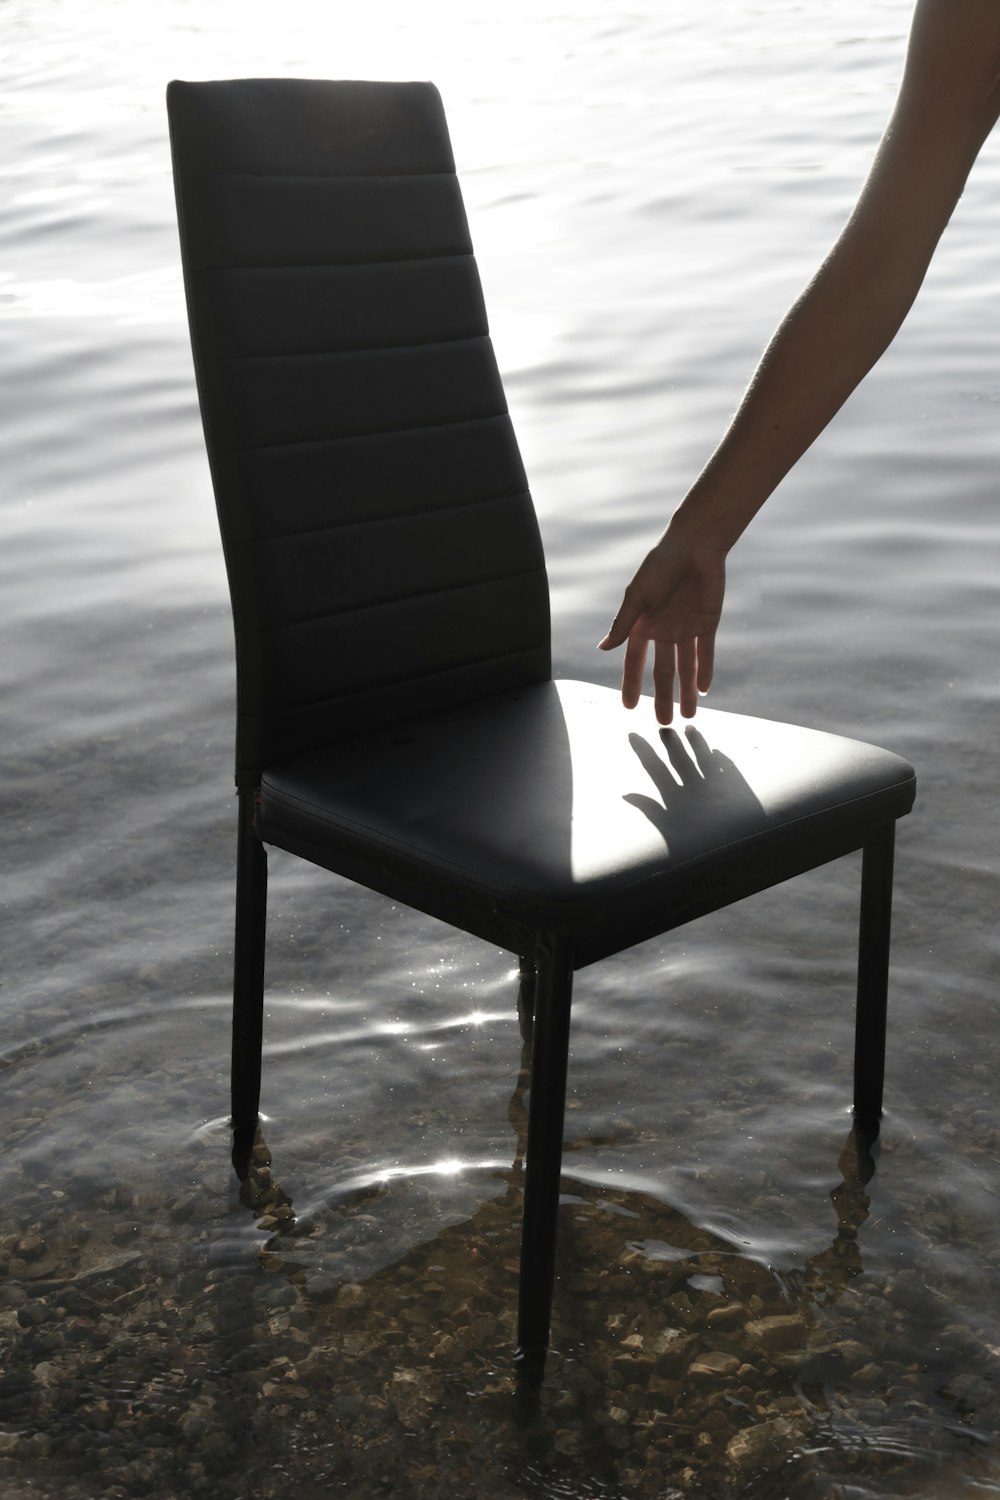 Eine Person, die nach einem Stuhl im Wasser greift